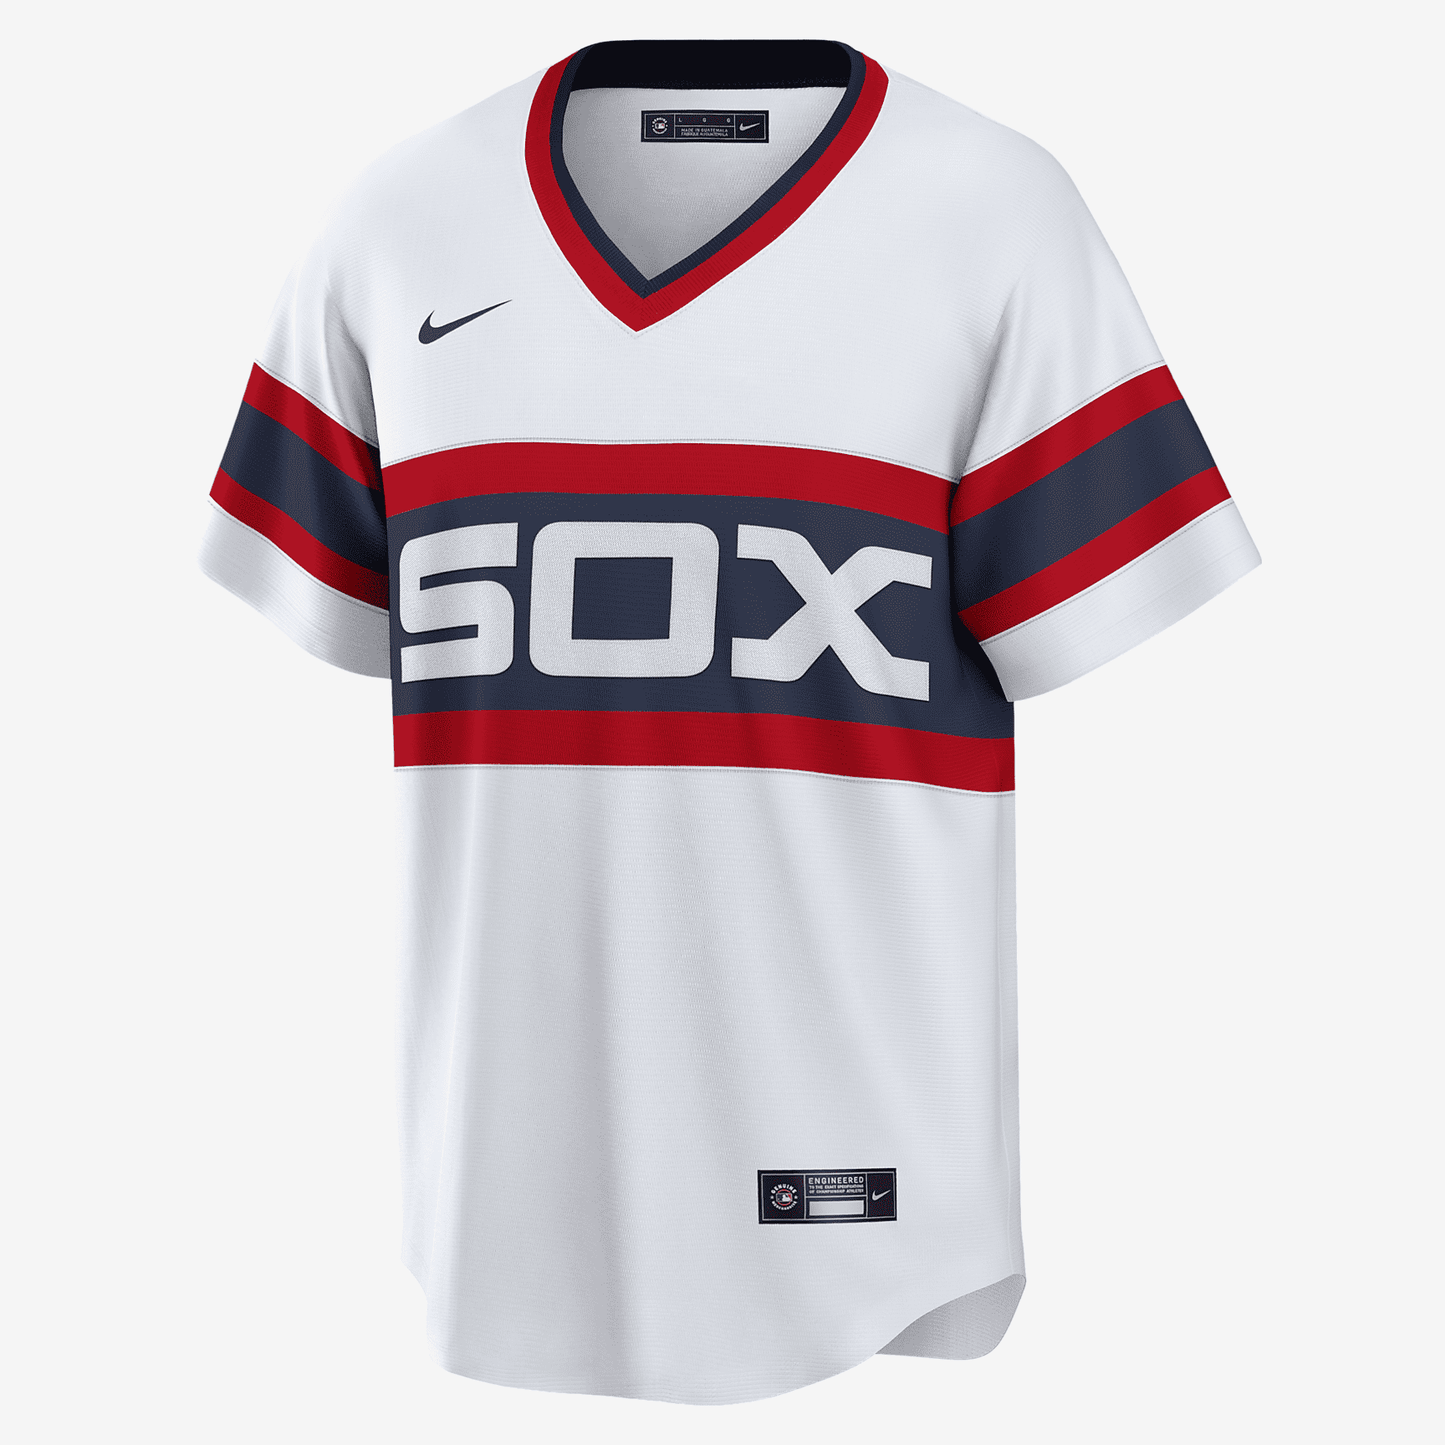 MLB Chicago White Sox (Carlton Fisk) Men's Cooperstown Baseball Jersey - White